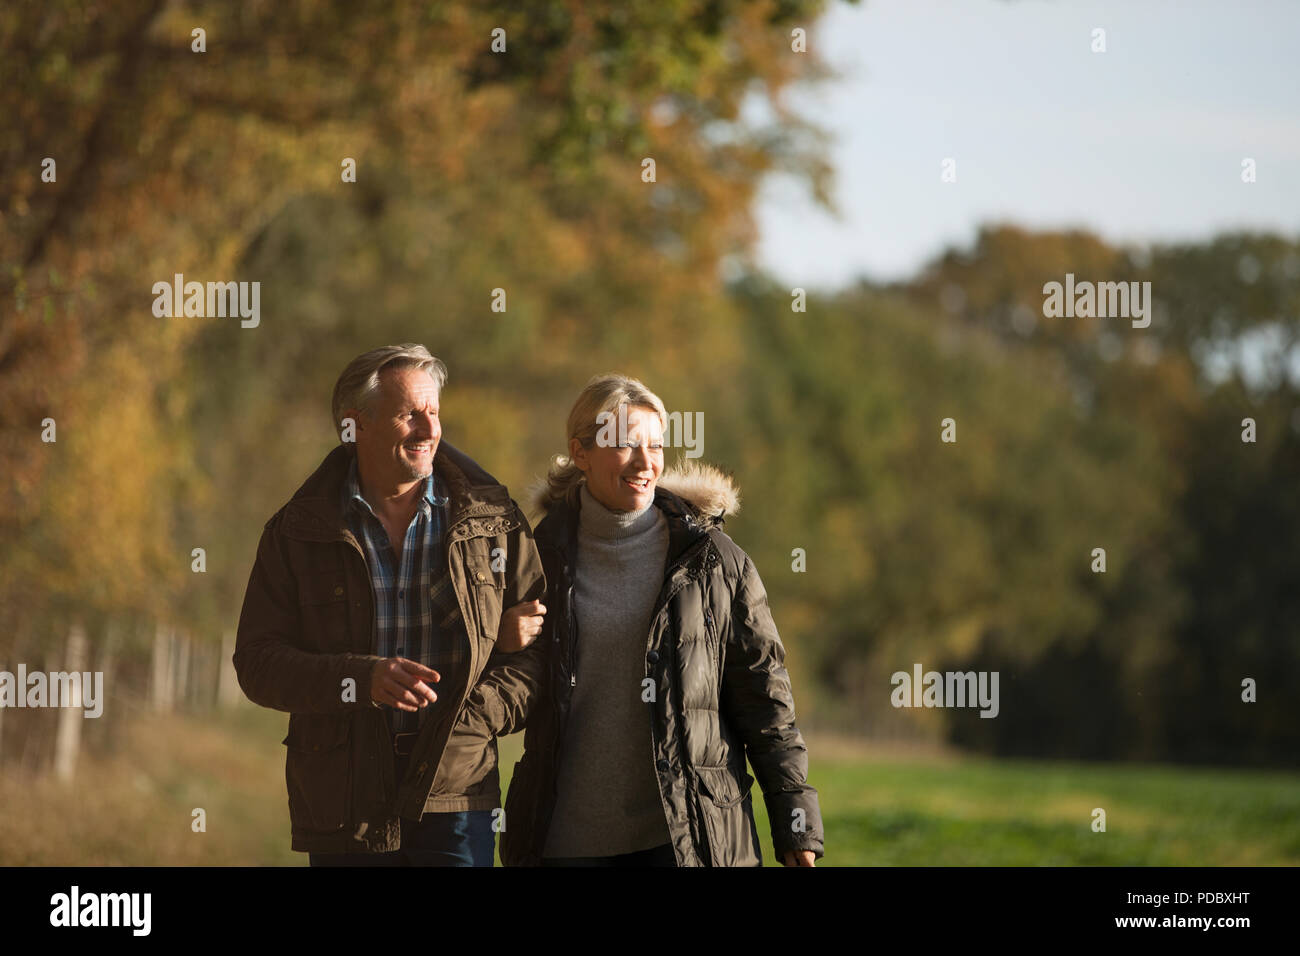 Mature couple walking arm in arm à sunny autumn park Banque D'Images